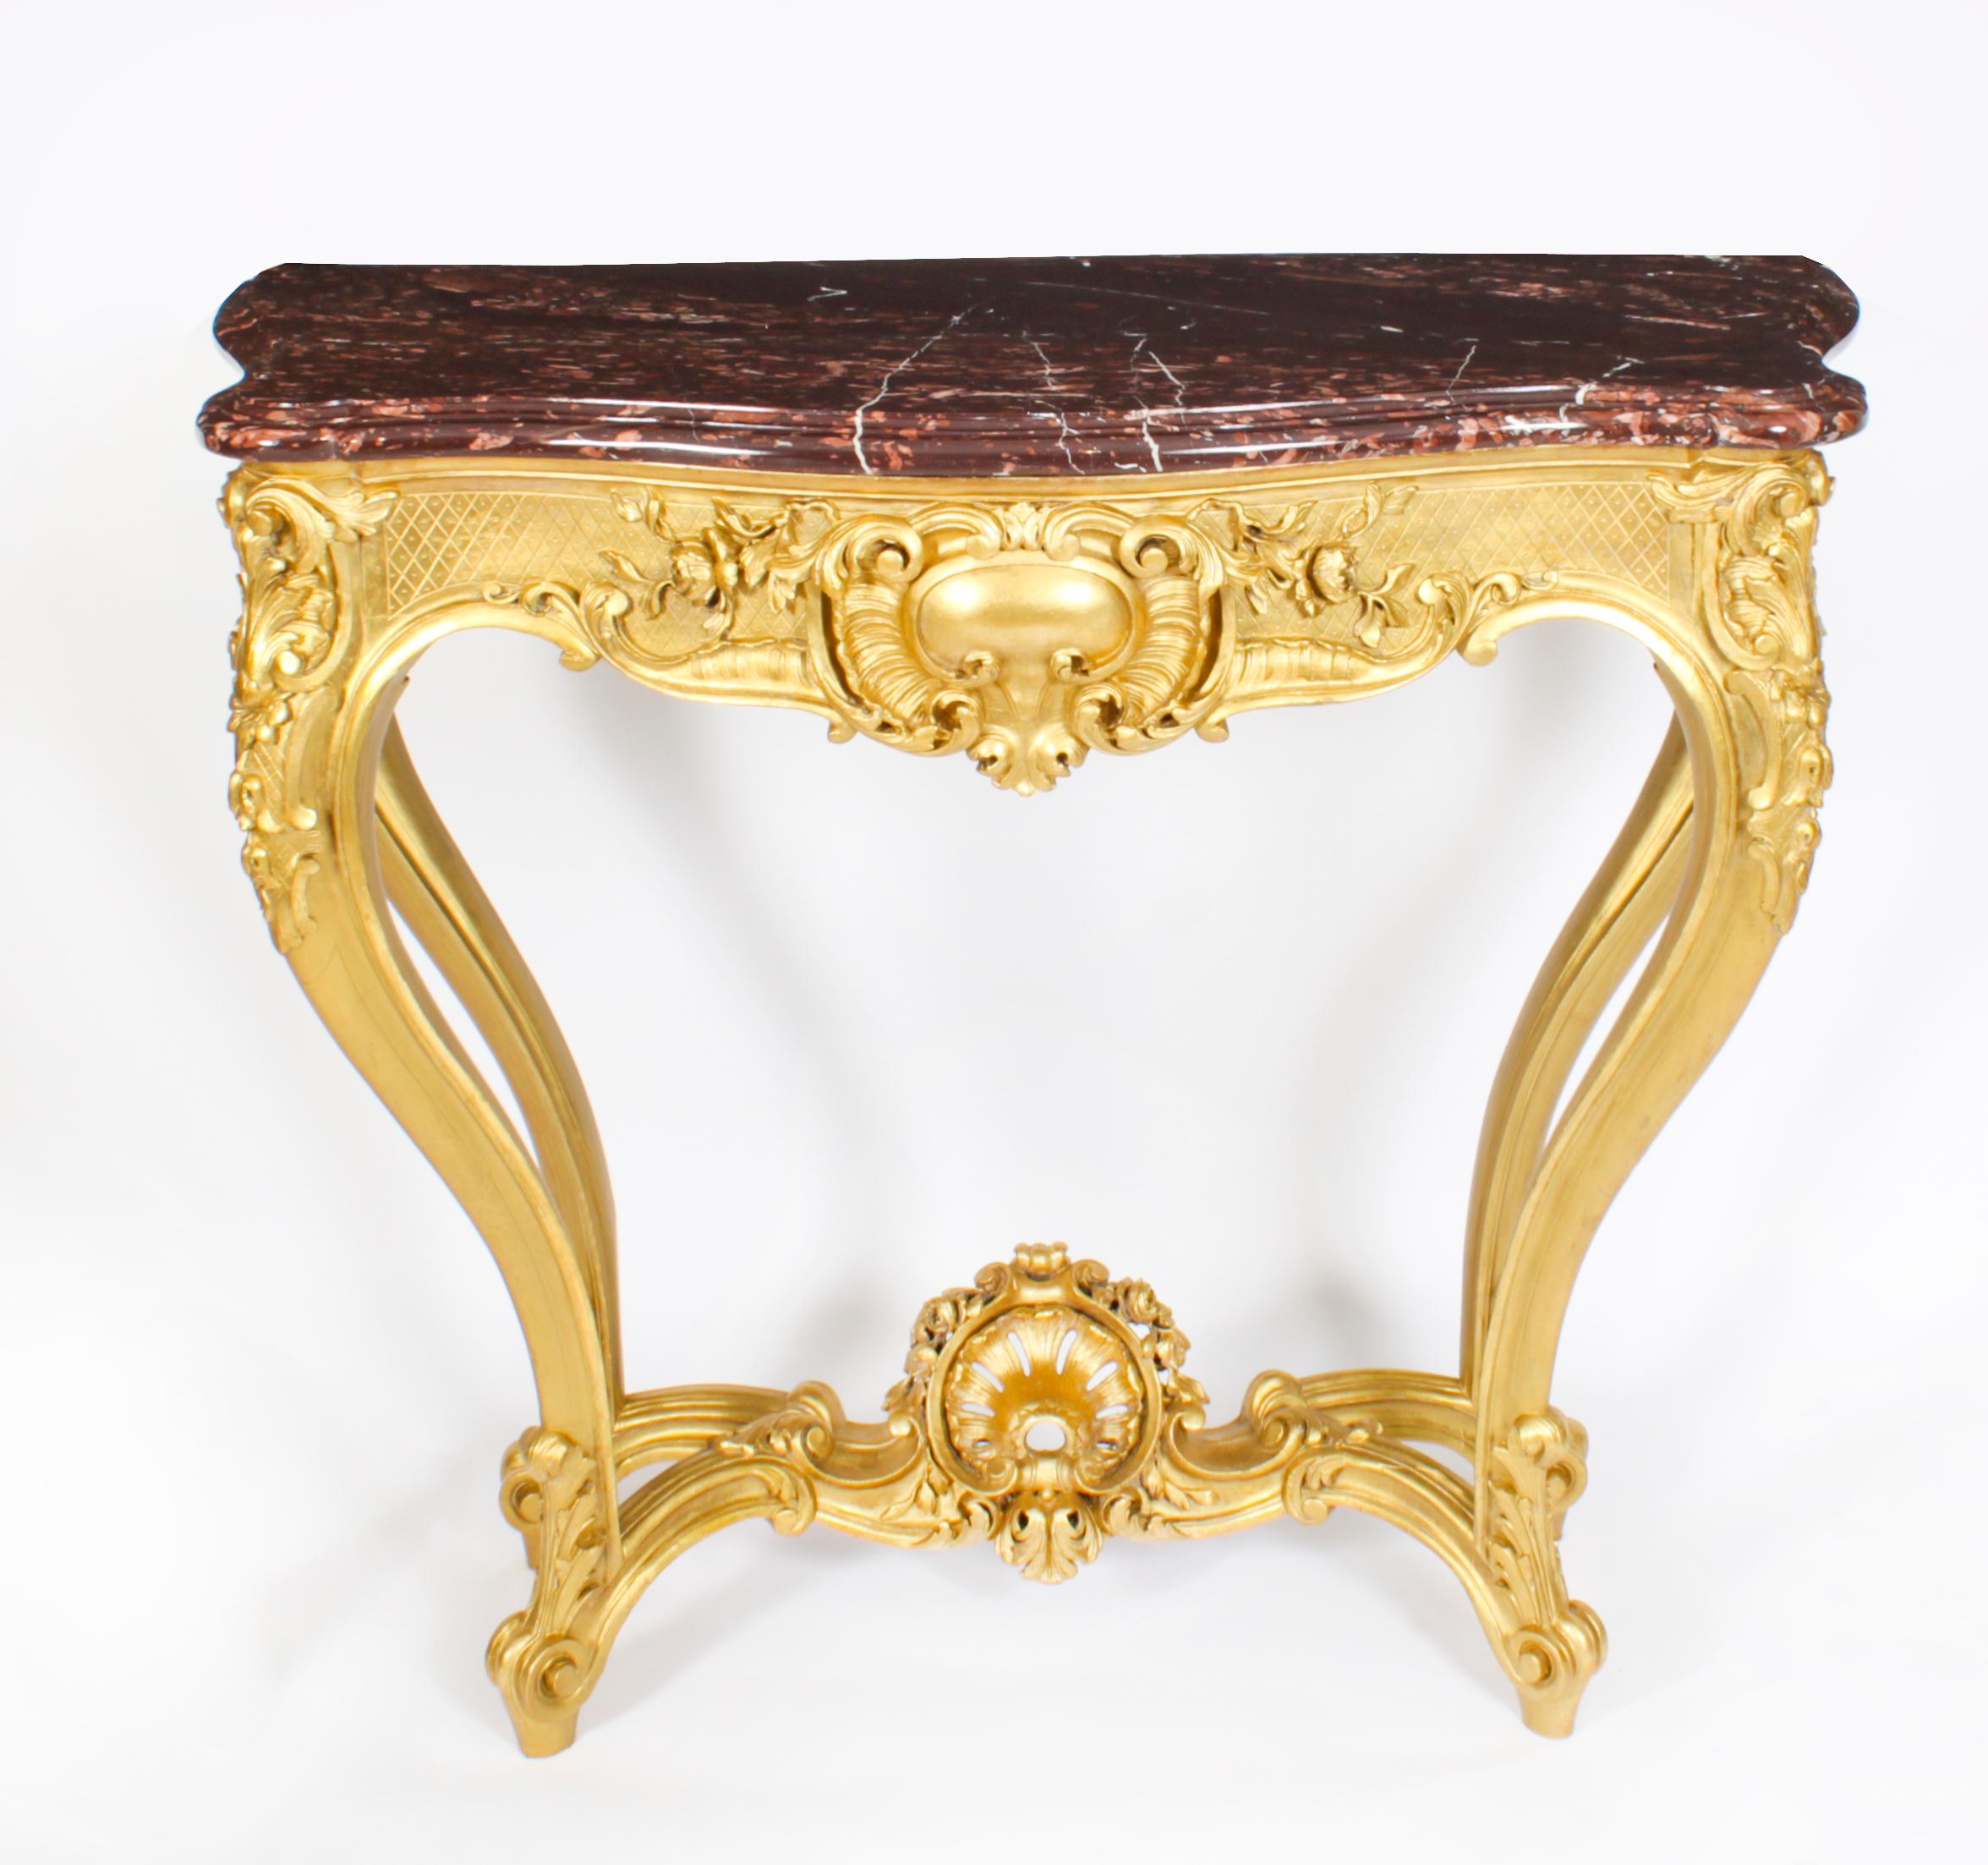 Ein feiner antiker Louis XV-Revival-Konsolentisch aus vergoldetem Holz mit Marmorplatte, datiert um 1830.
 
Dieser fein geschnitzte Konsolentisch aus vergoldetem Holz ist mit einer exquisit geformten rechteckigen Vielle Brun-Marmorplatte über